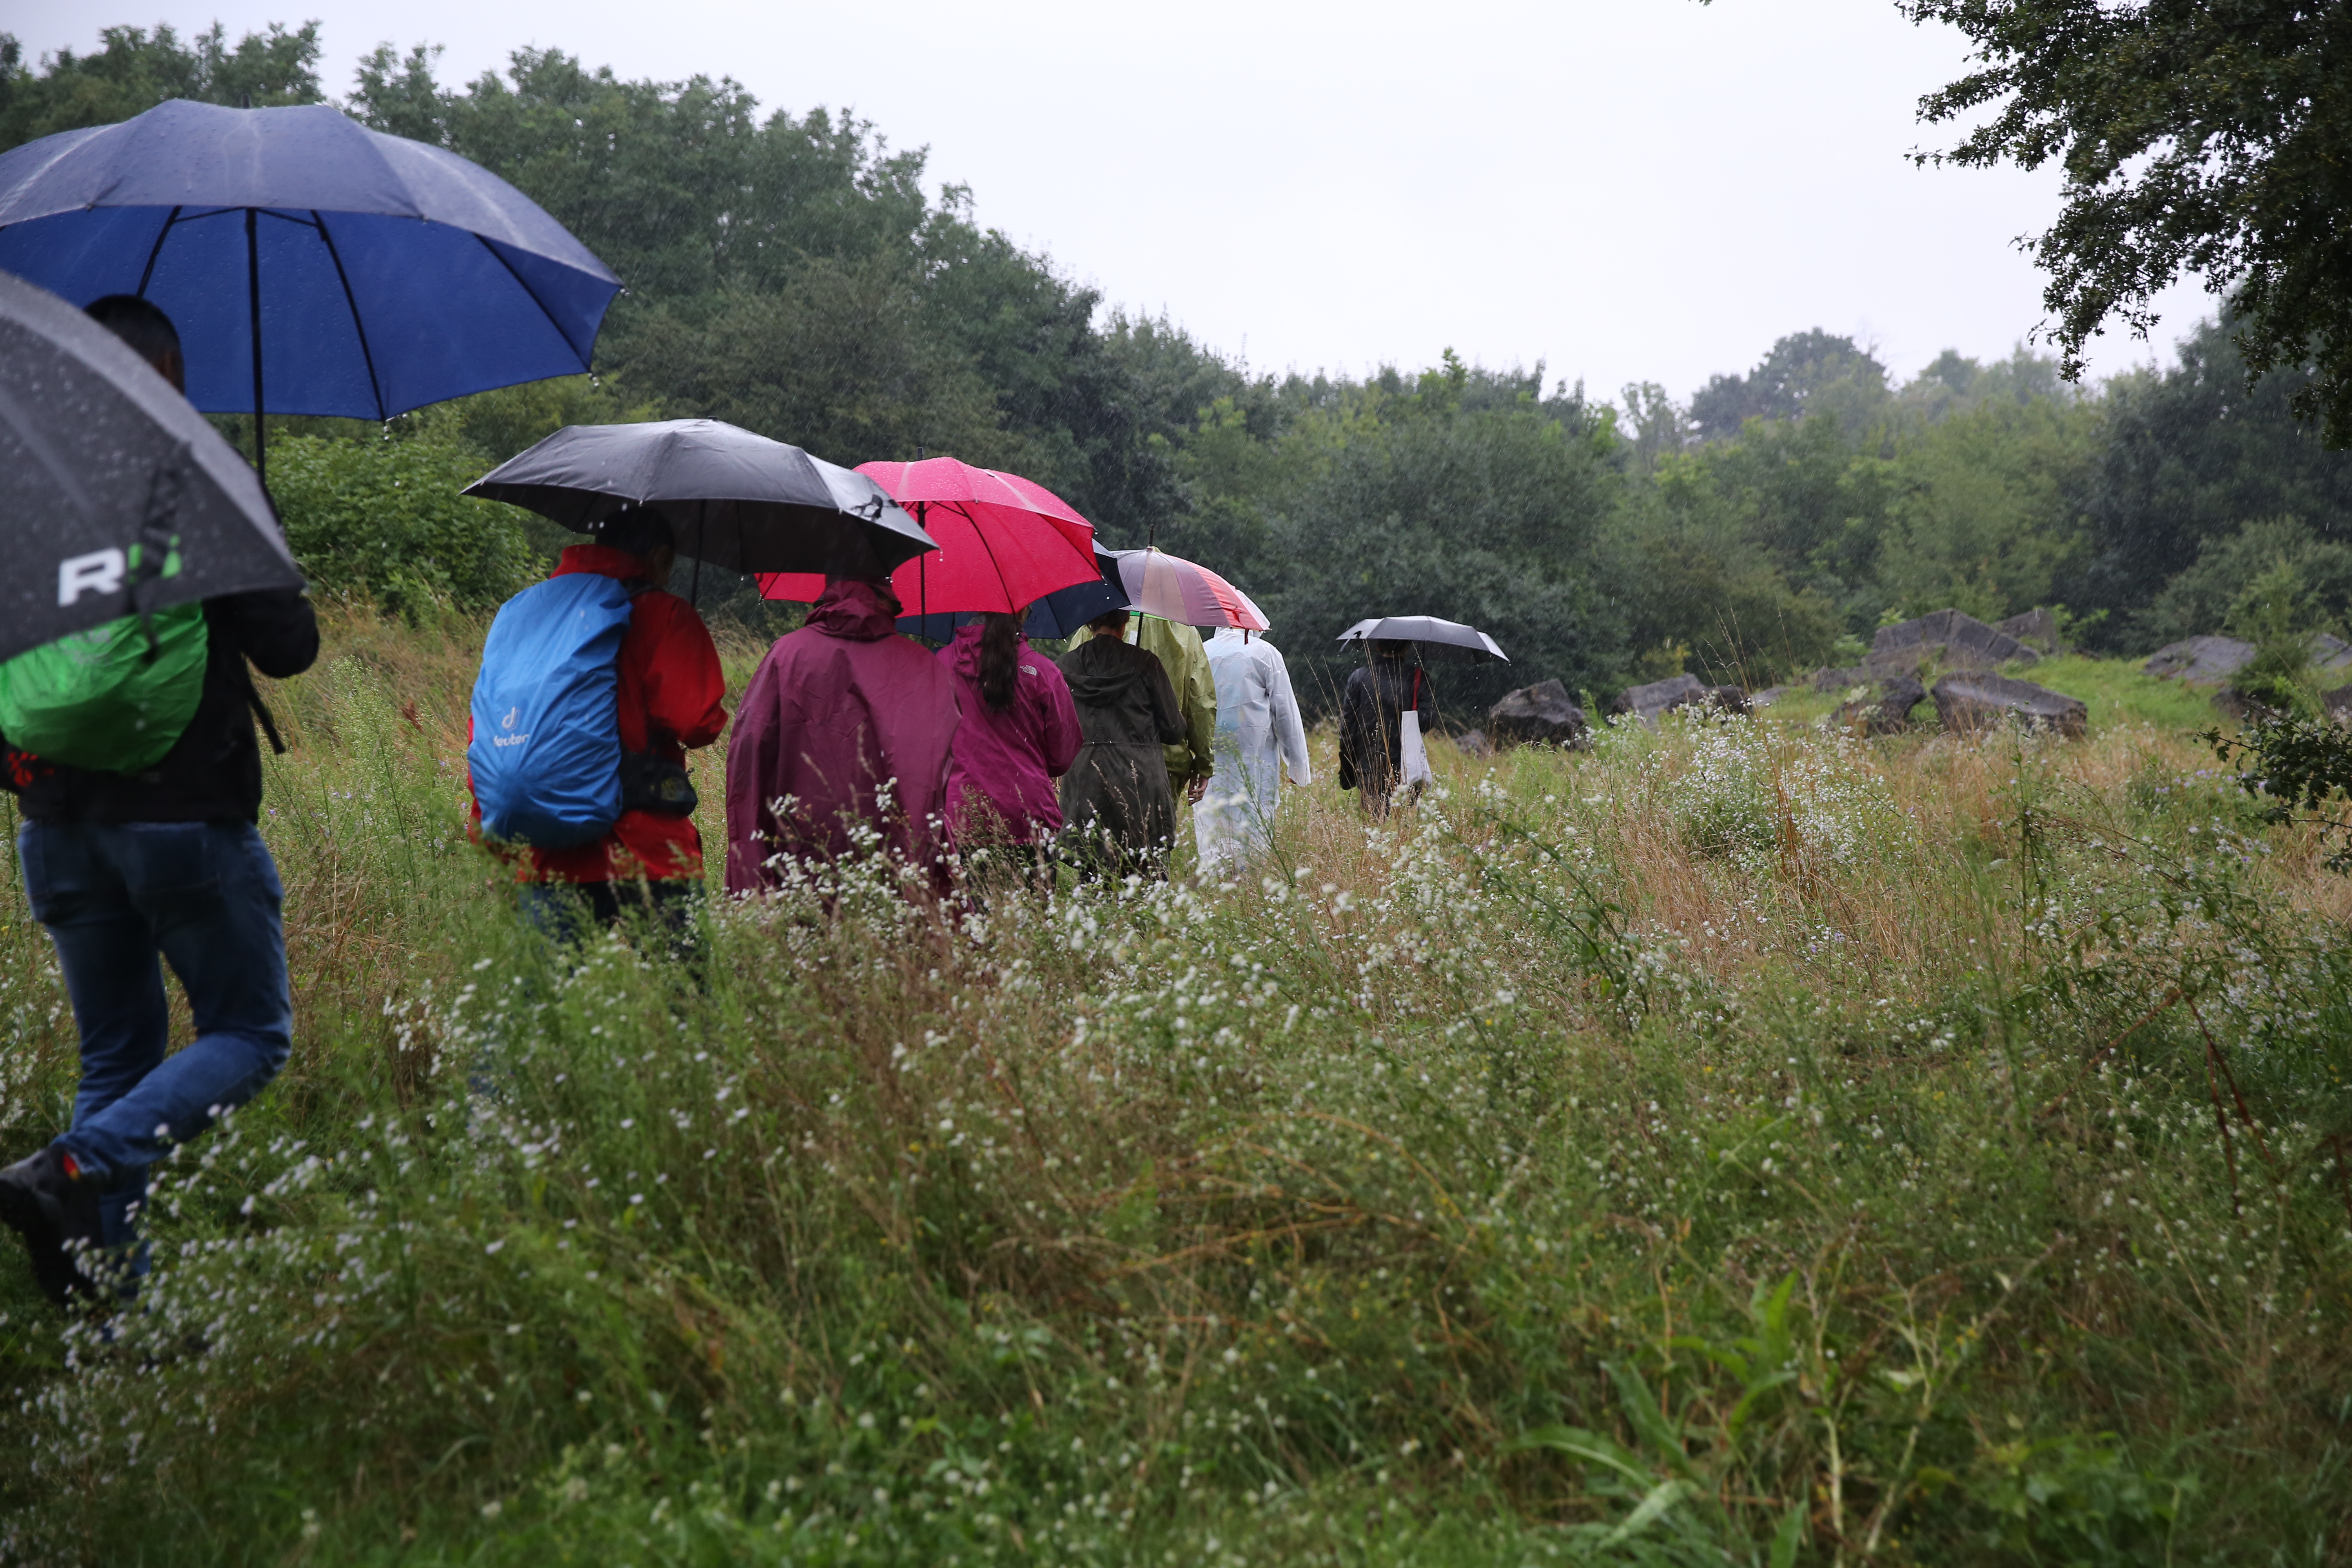 Grupa idących ludzi pod parasolami i w pelerynach przeciwdeszczowych pośród zielonego krajobrazu.